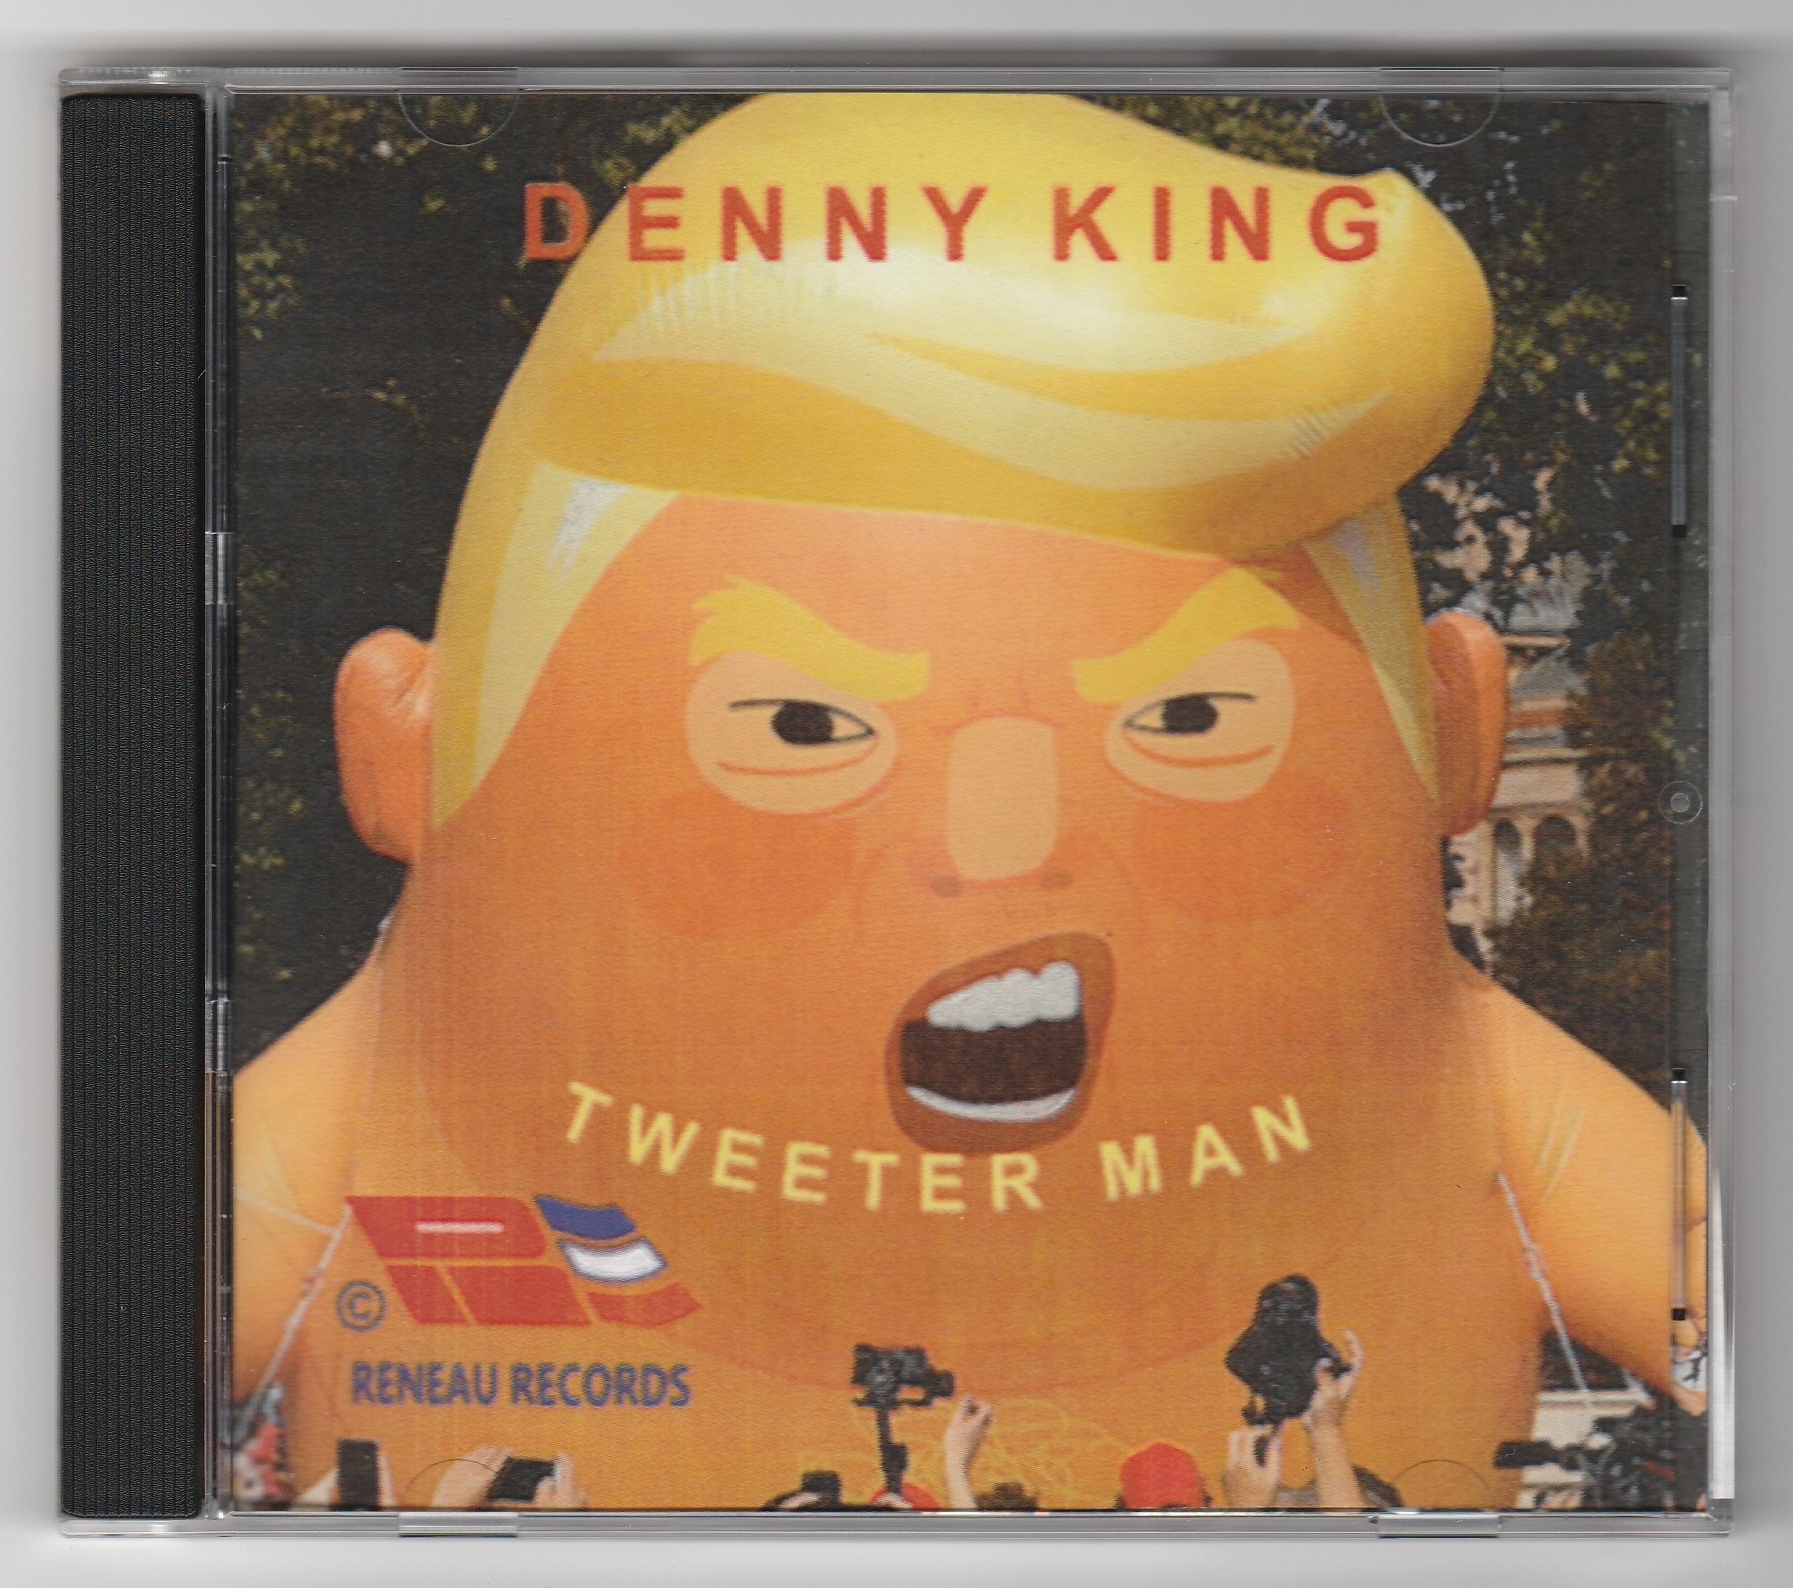 TWEETER MAN - DENNY KING (04 - 2020)